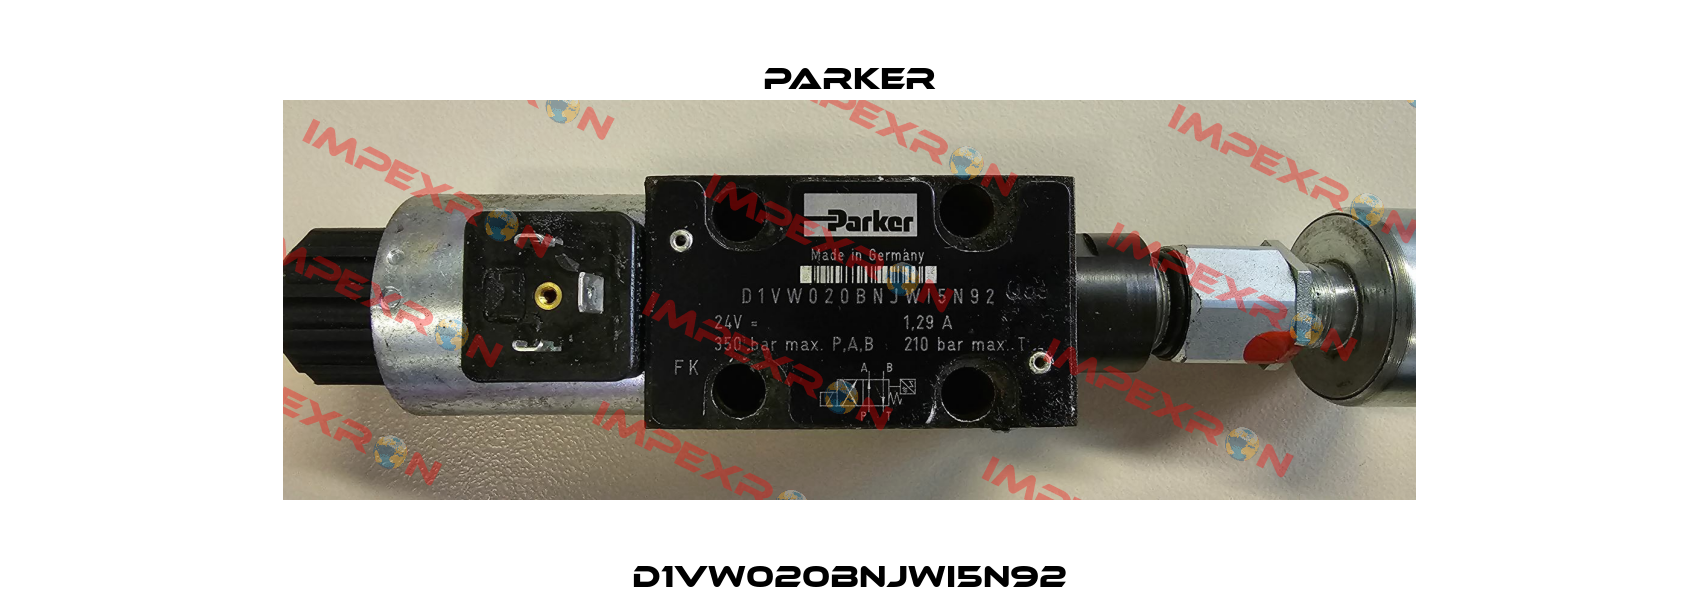 D1VW020BNJWI5N92 Parker